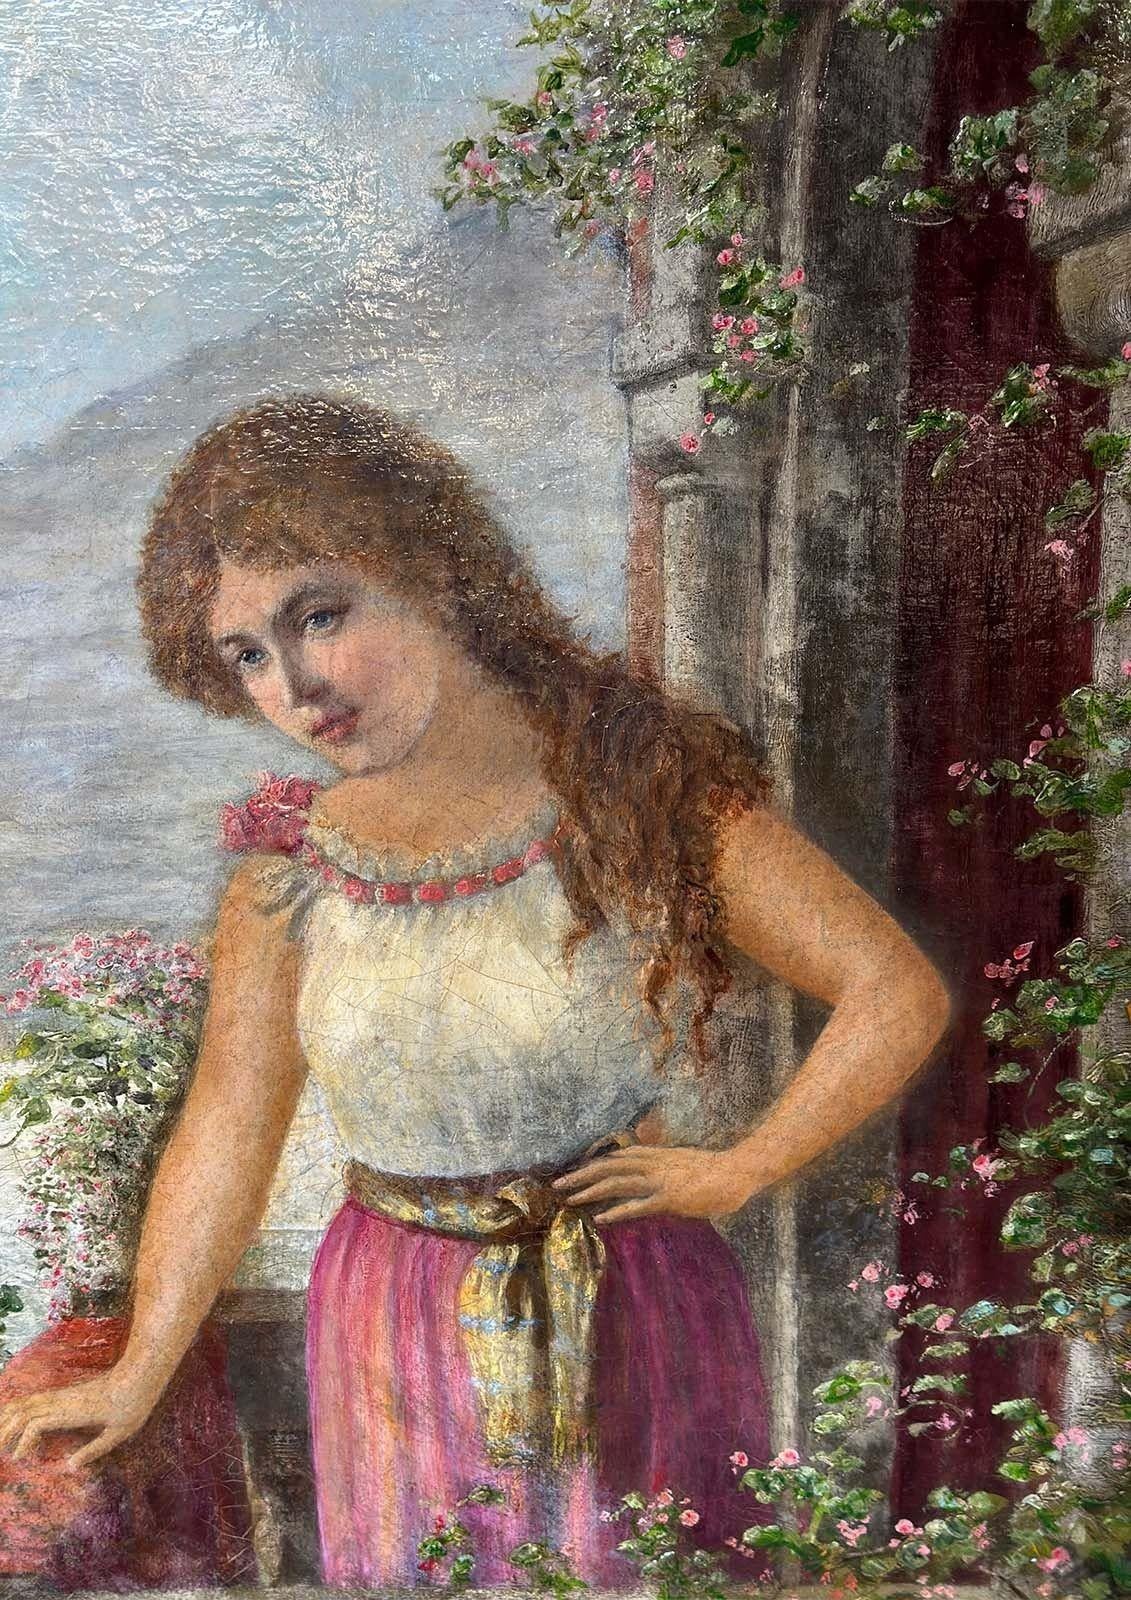 Antikes Porträt in einem handgeschnitzten Goldholzrahmen, das eine schöne rothaarige junge Dame zeigt, die elegant auf einer Veranda voller bunter Blumen steht. Sie scheint einen Blick auf einen See und die Berge im Hintergrund zu haben. Das